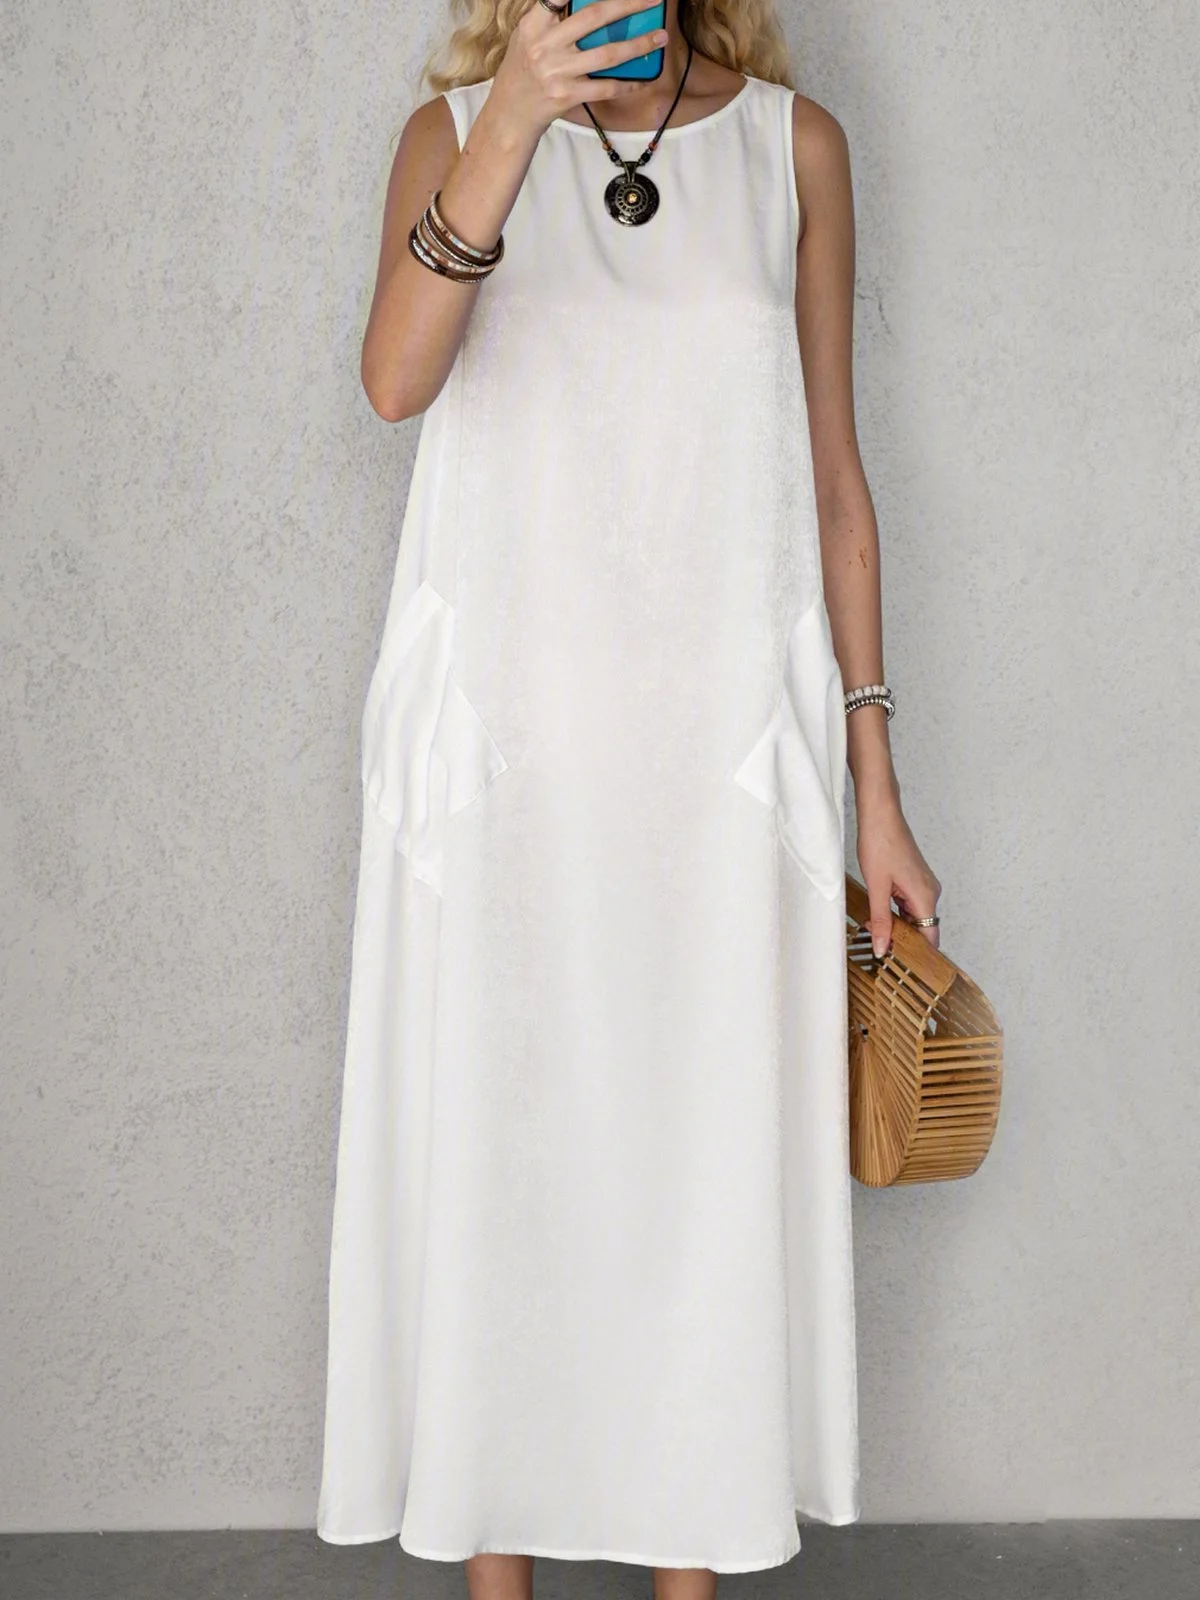 White Cotton Weaving Dress